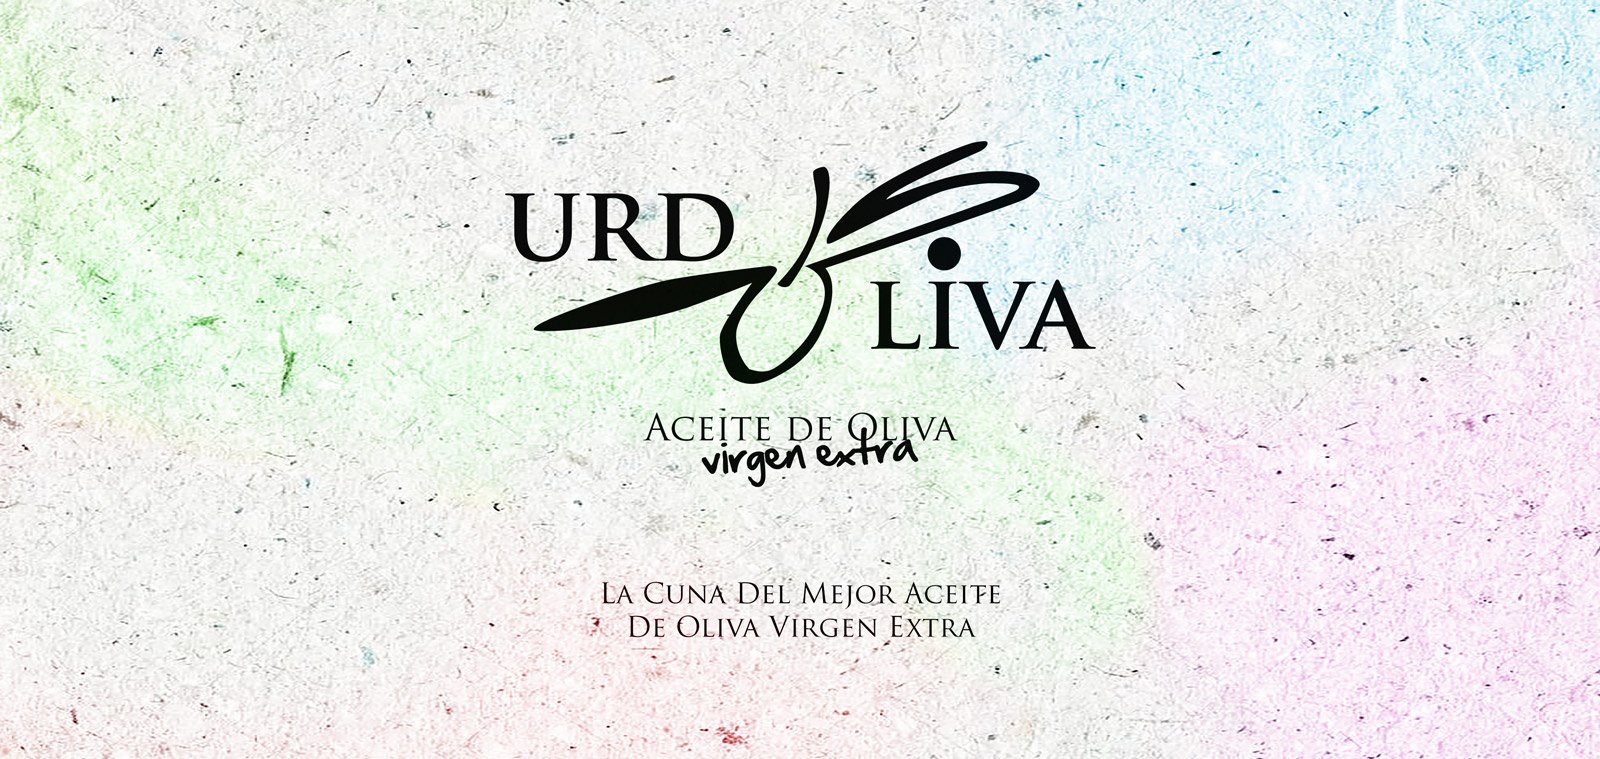 Diseño gráfico y creativo de etiquetas de aceite de oliva virgen extra para la marca URDOLIVA